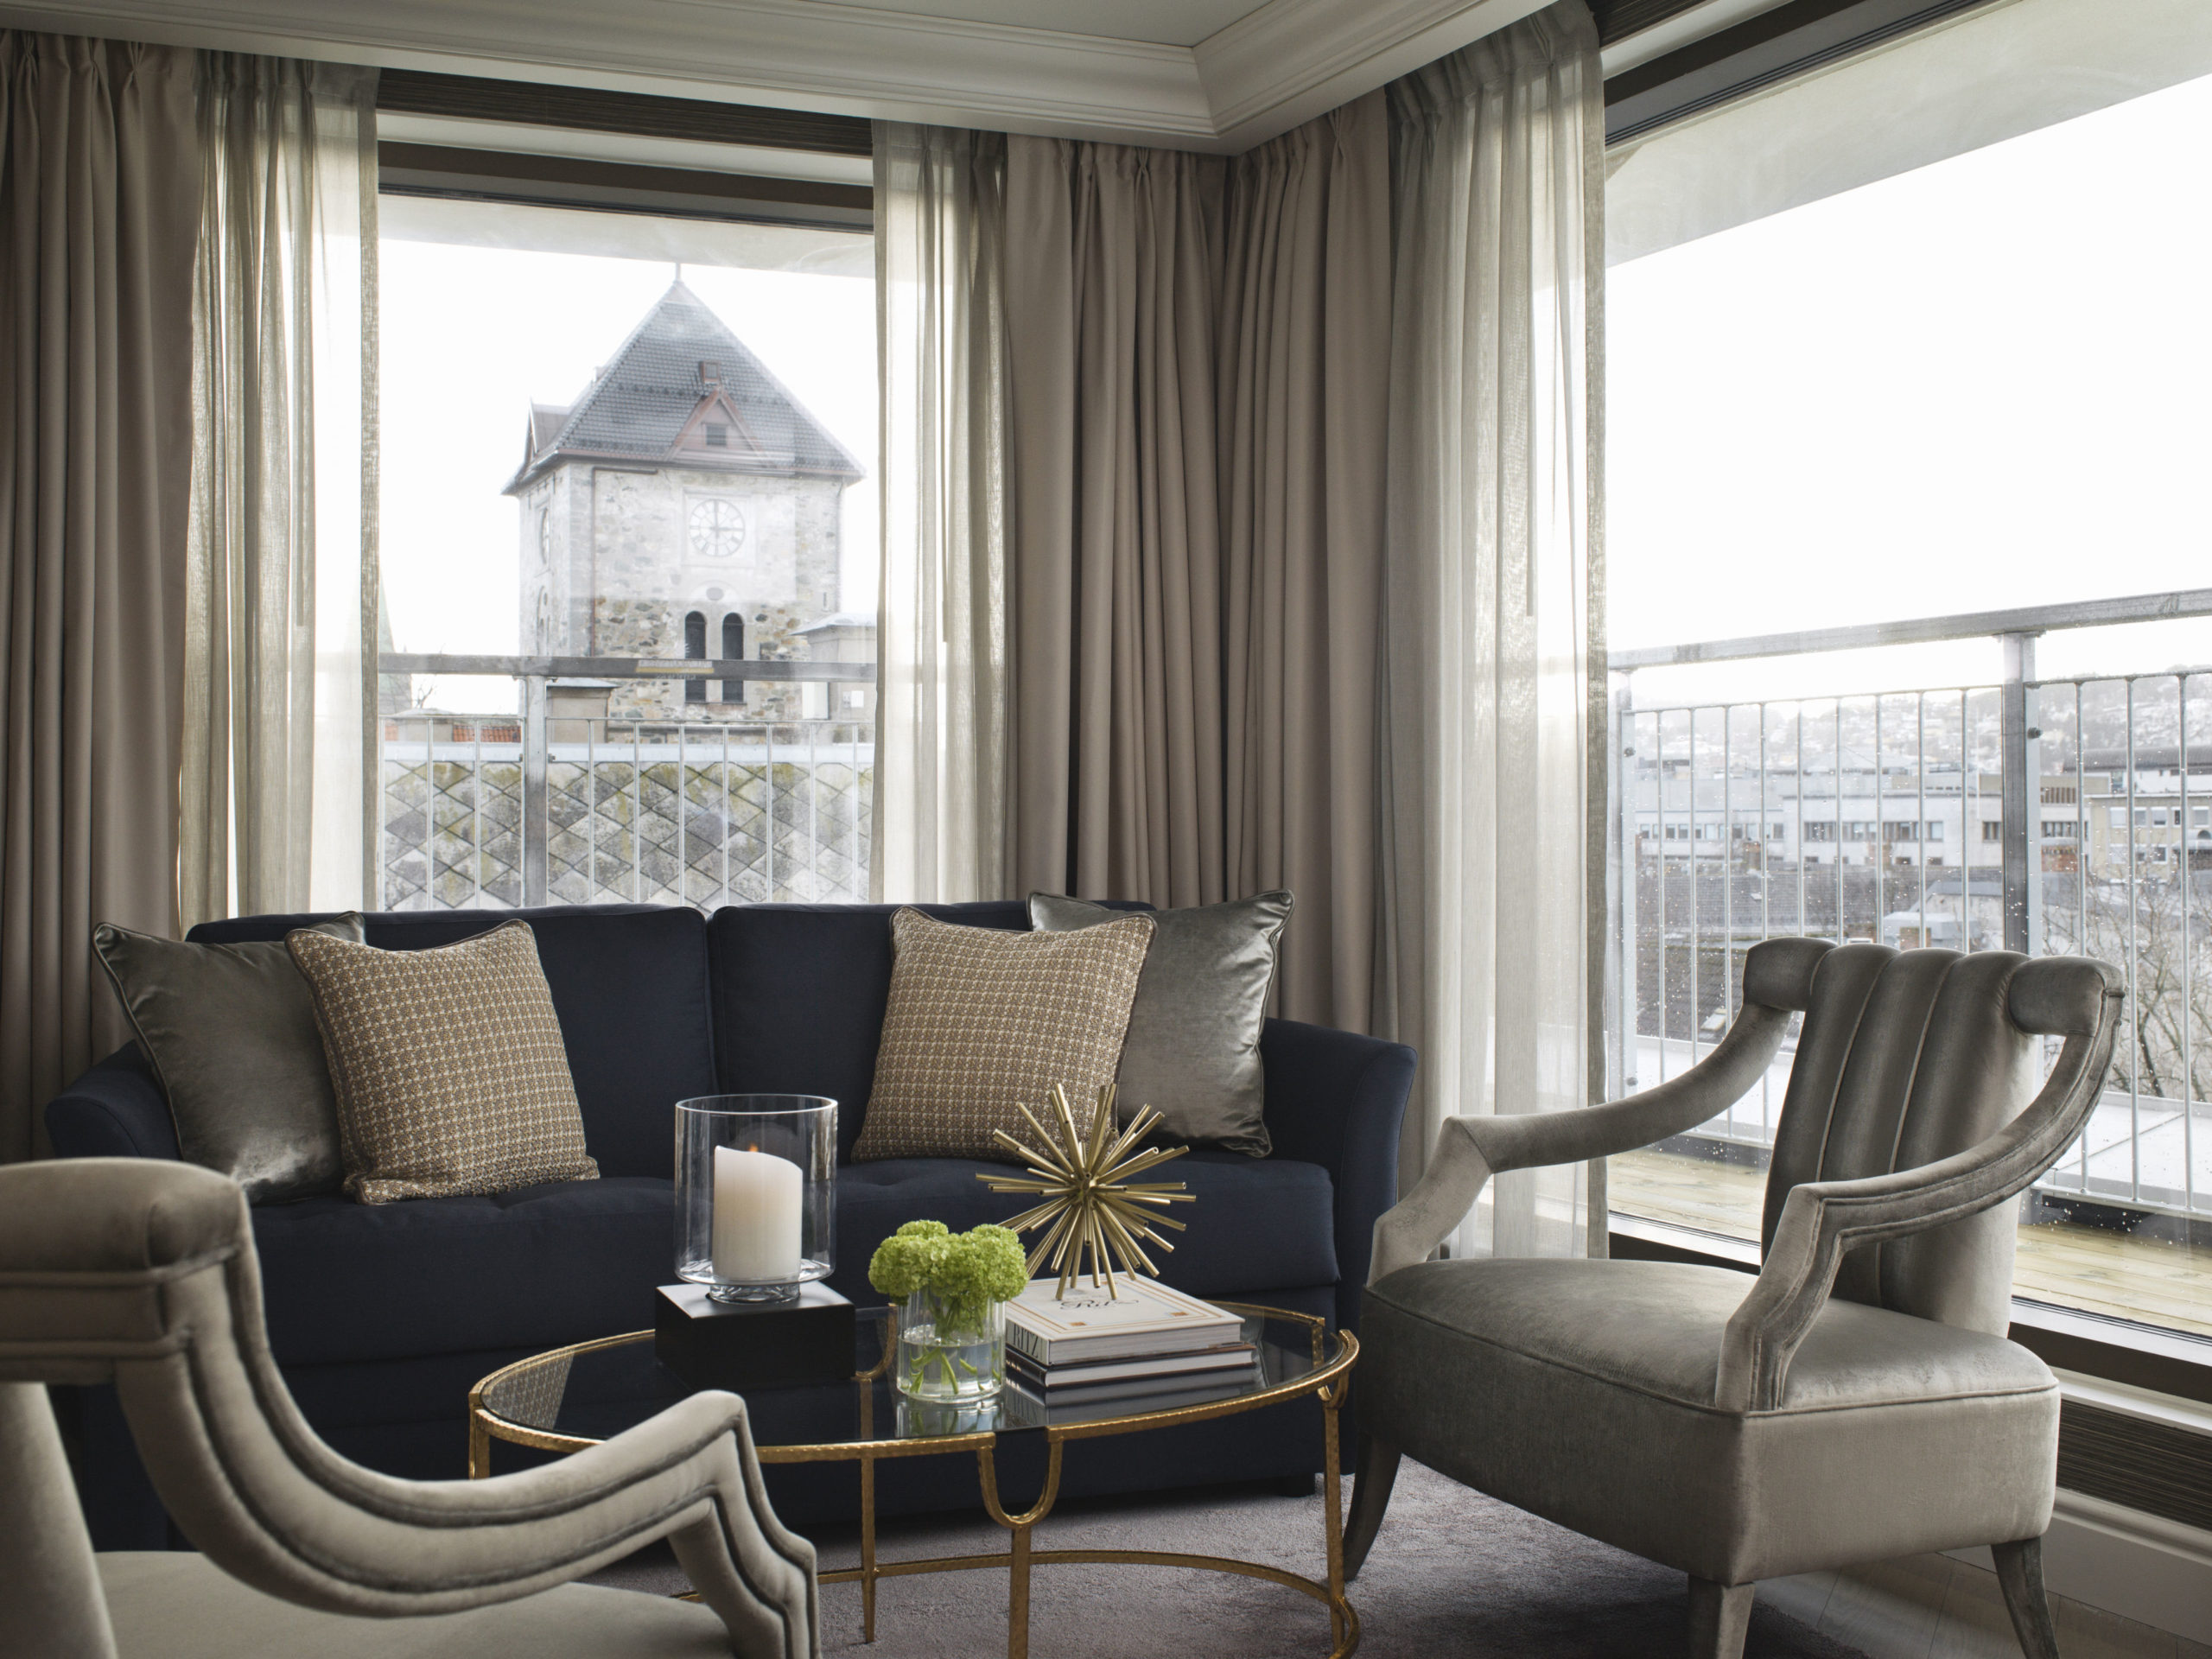 Executive suite i Trondheim - stue med utsikt og balkong i bakgrunn